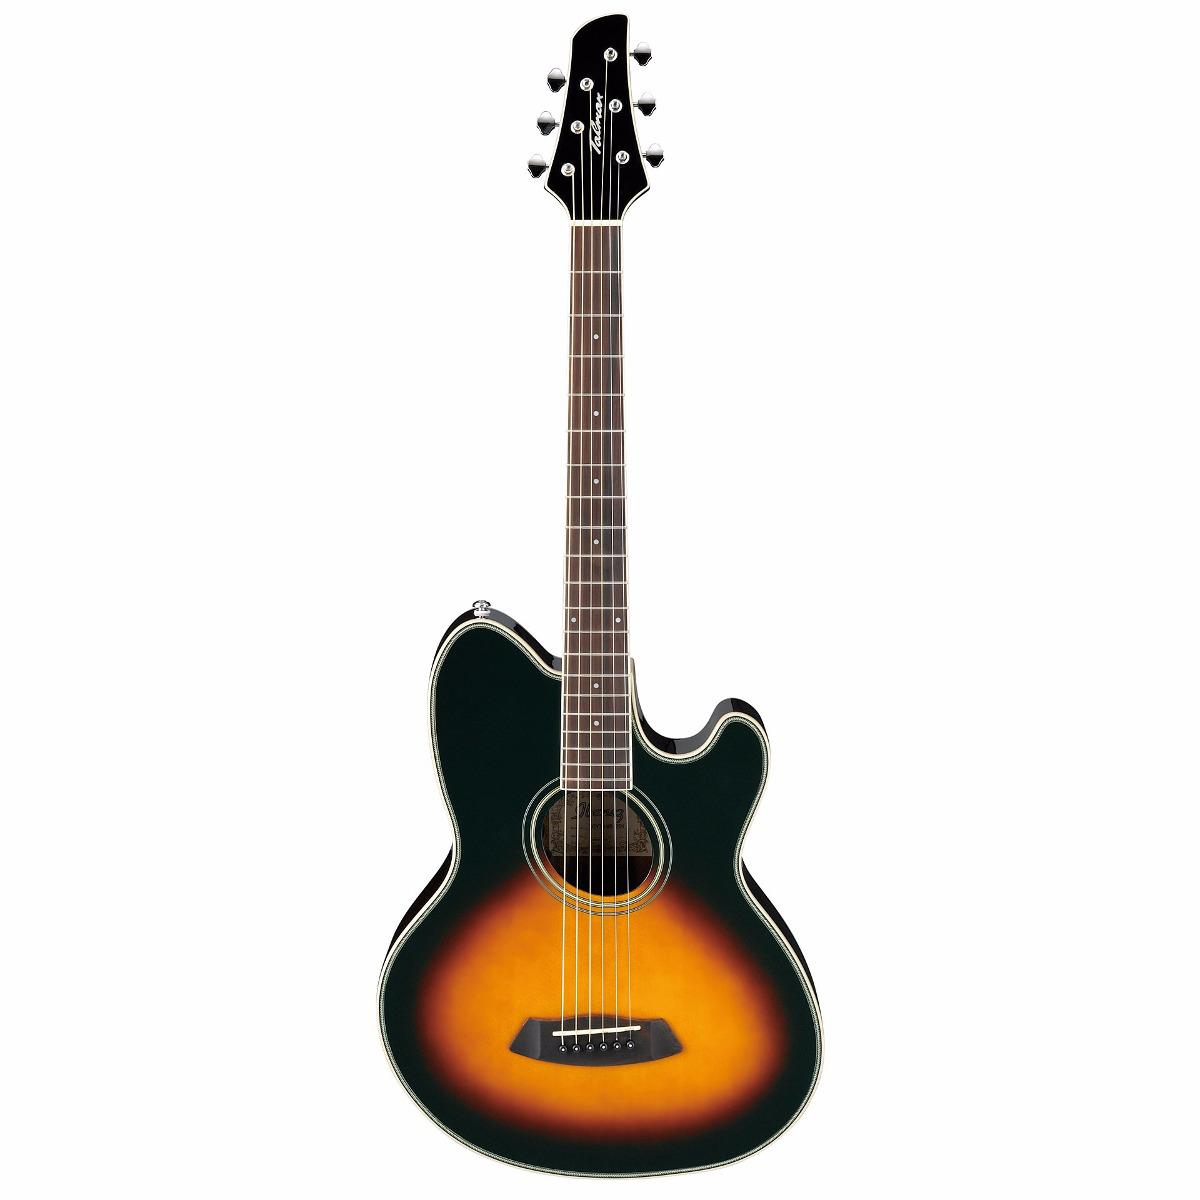 Ibañez - Guitarra Electroacústica Talman, Color Sombra Mod.TCY70-VS_33